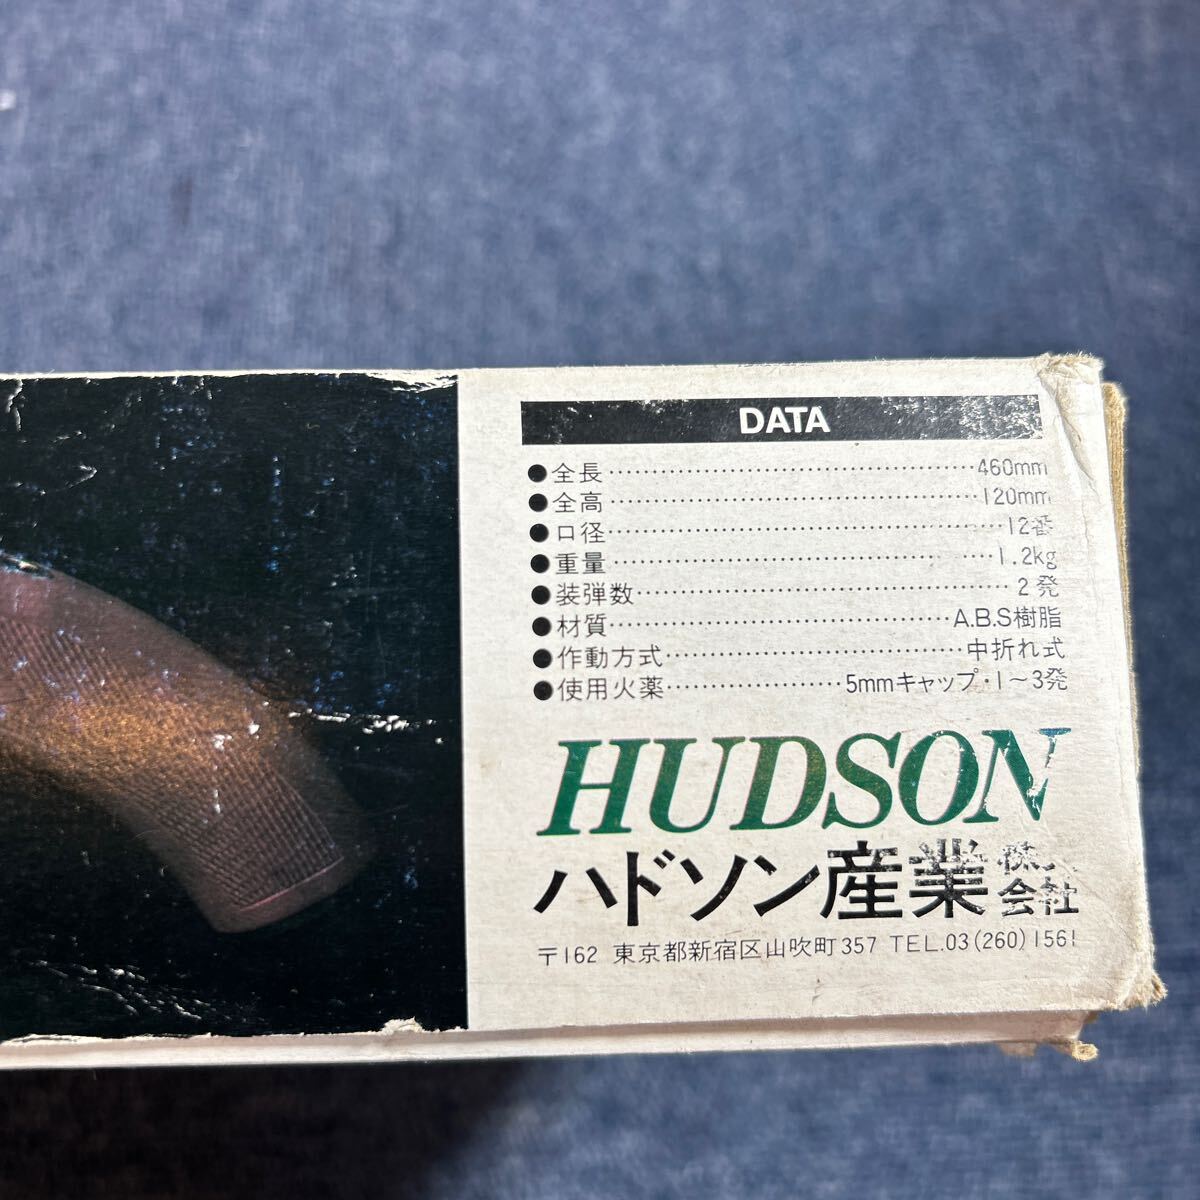 【おそらく欠片有り】ハドソン産業 マッドマックス モデルガン 全長460MM 口径12番 重量1.2kg 中折れ式 ショットガン 動作未確認の画像7